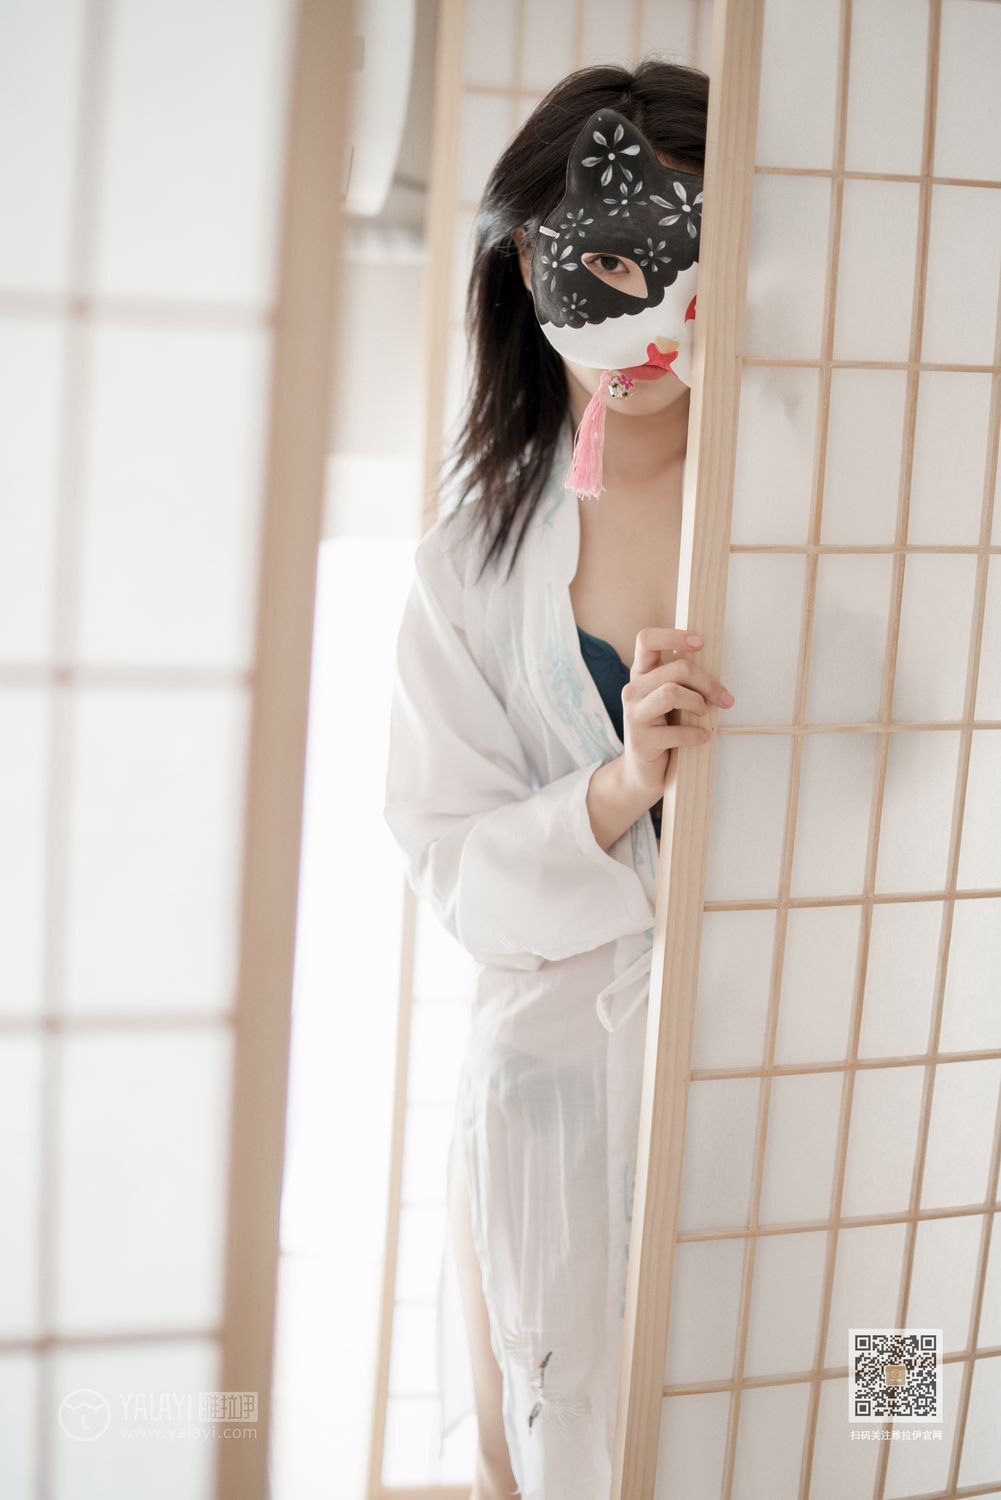 YALAYI Vol. 492 Cat girl in kimono style